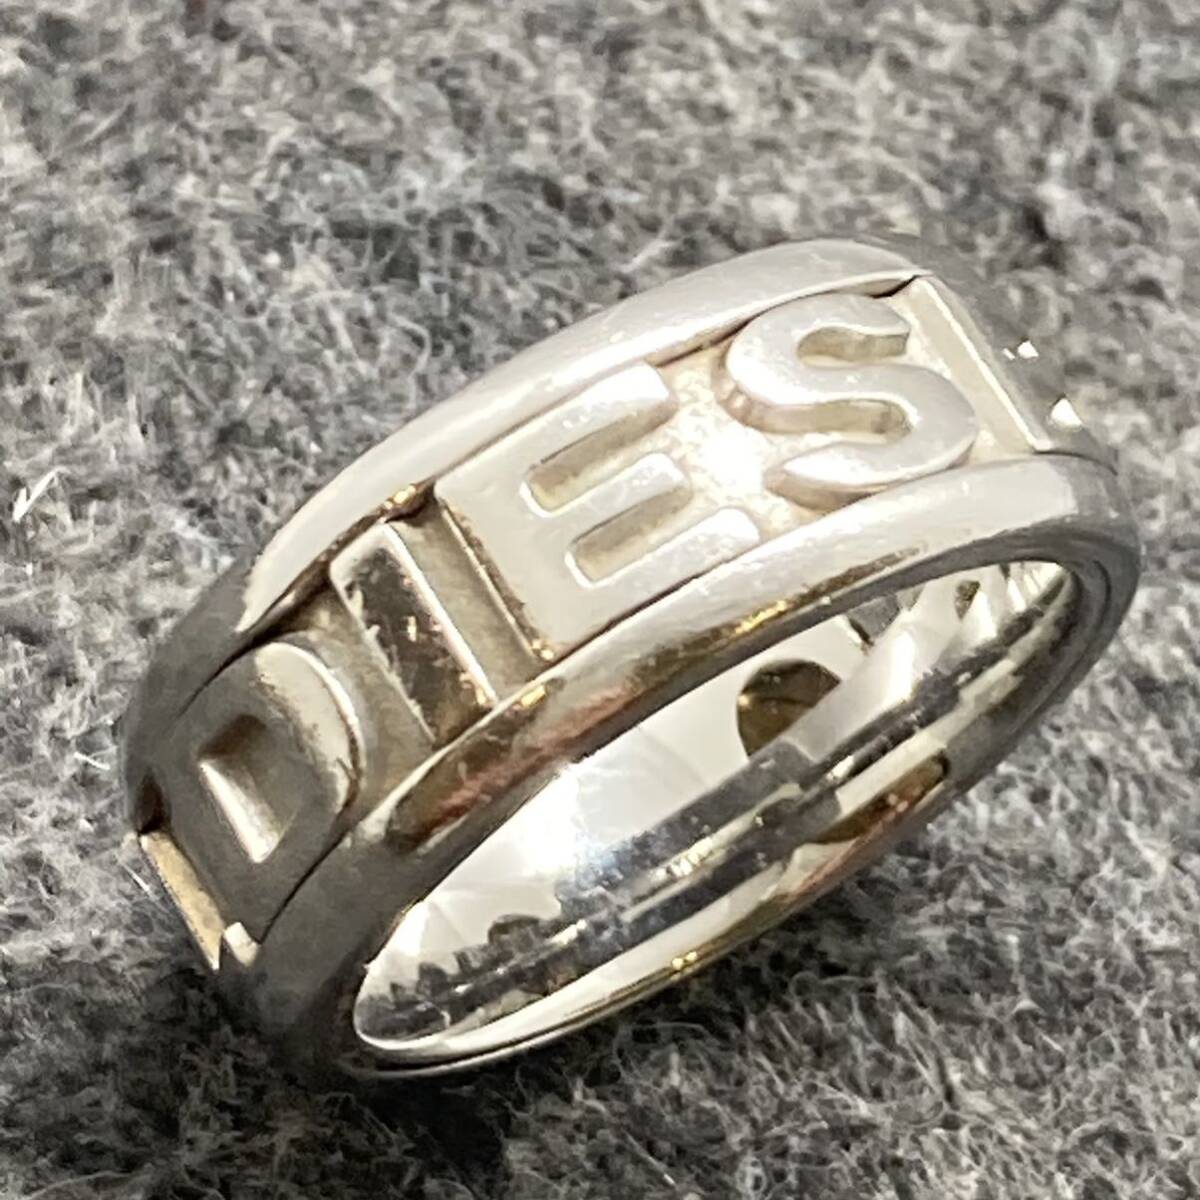 KO1264*DIESEL diesel ring ring STEEL steel 16 number width 8. men's logo design accessory storage bag attaching /